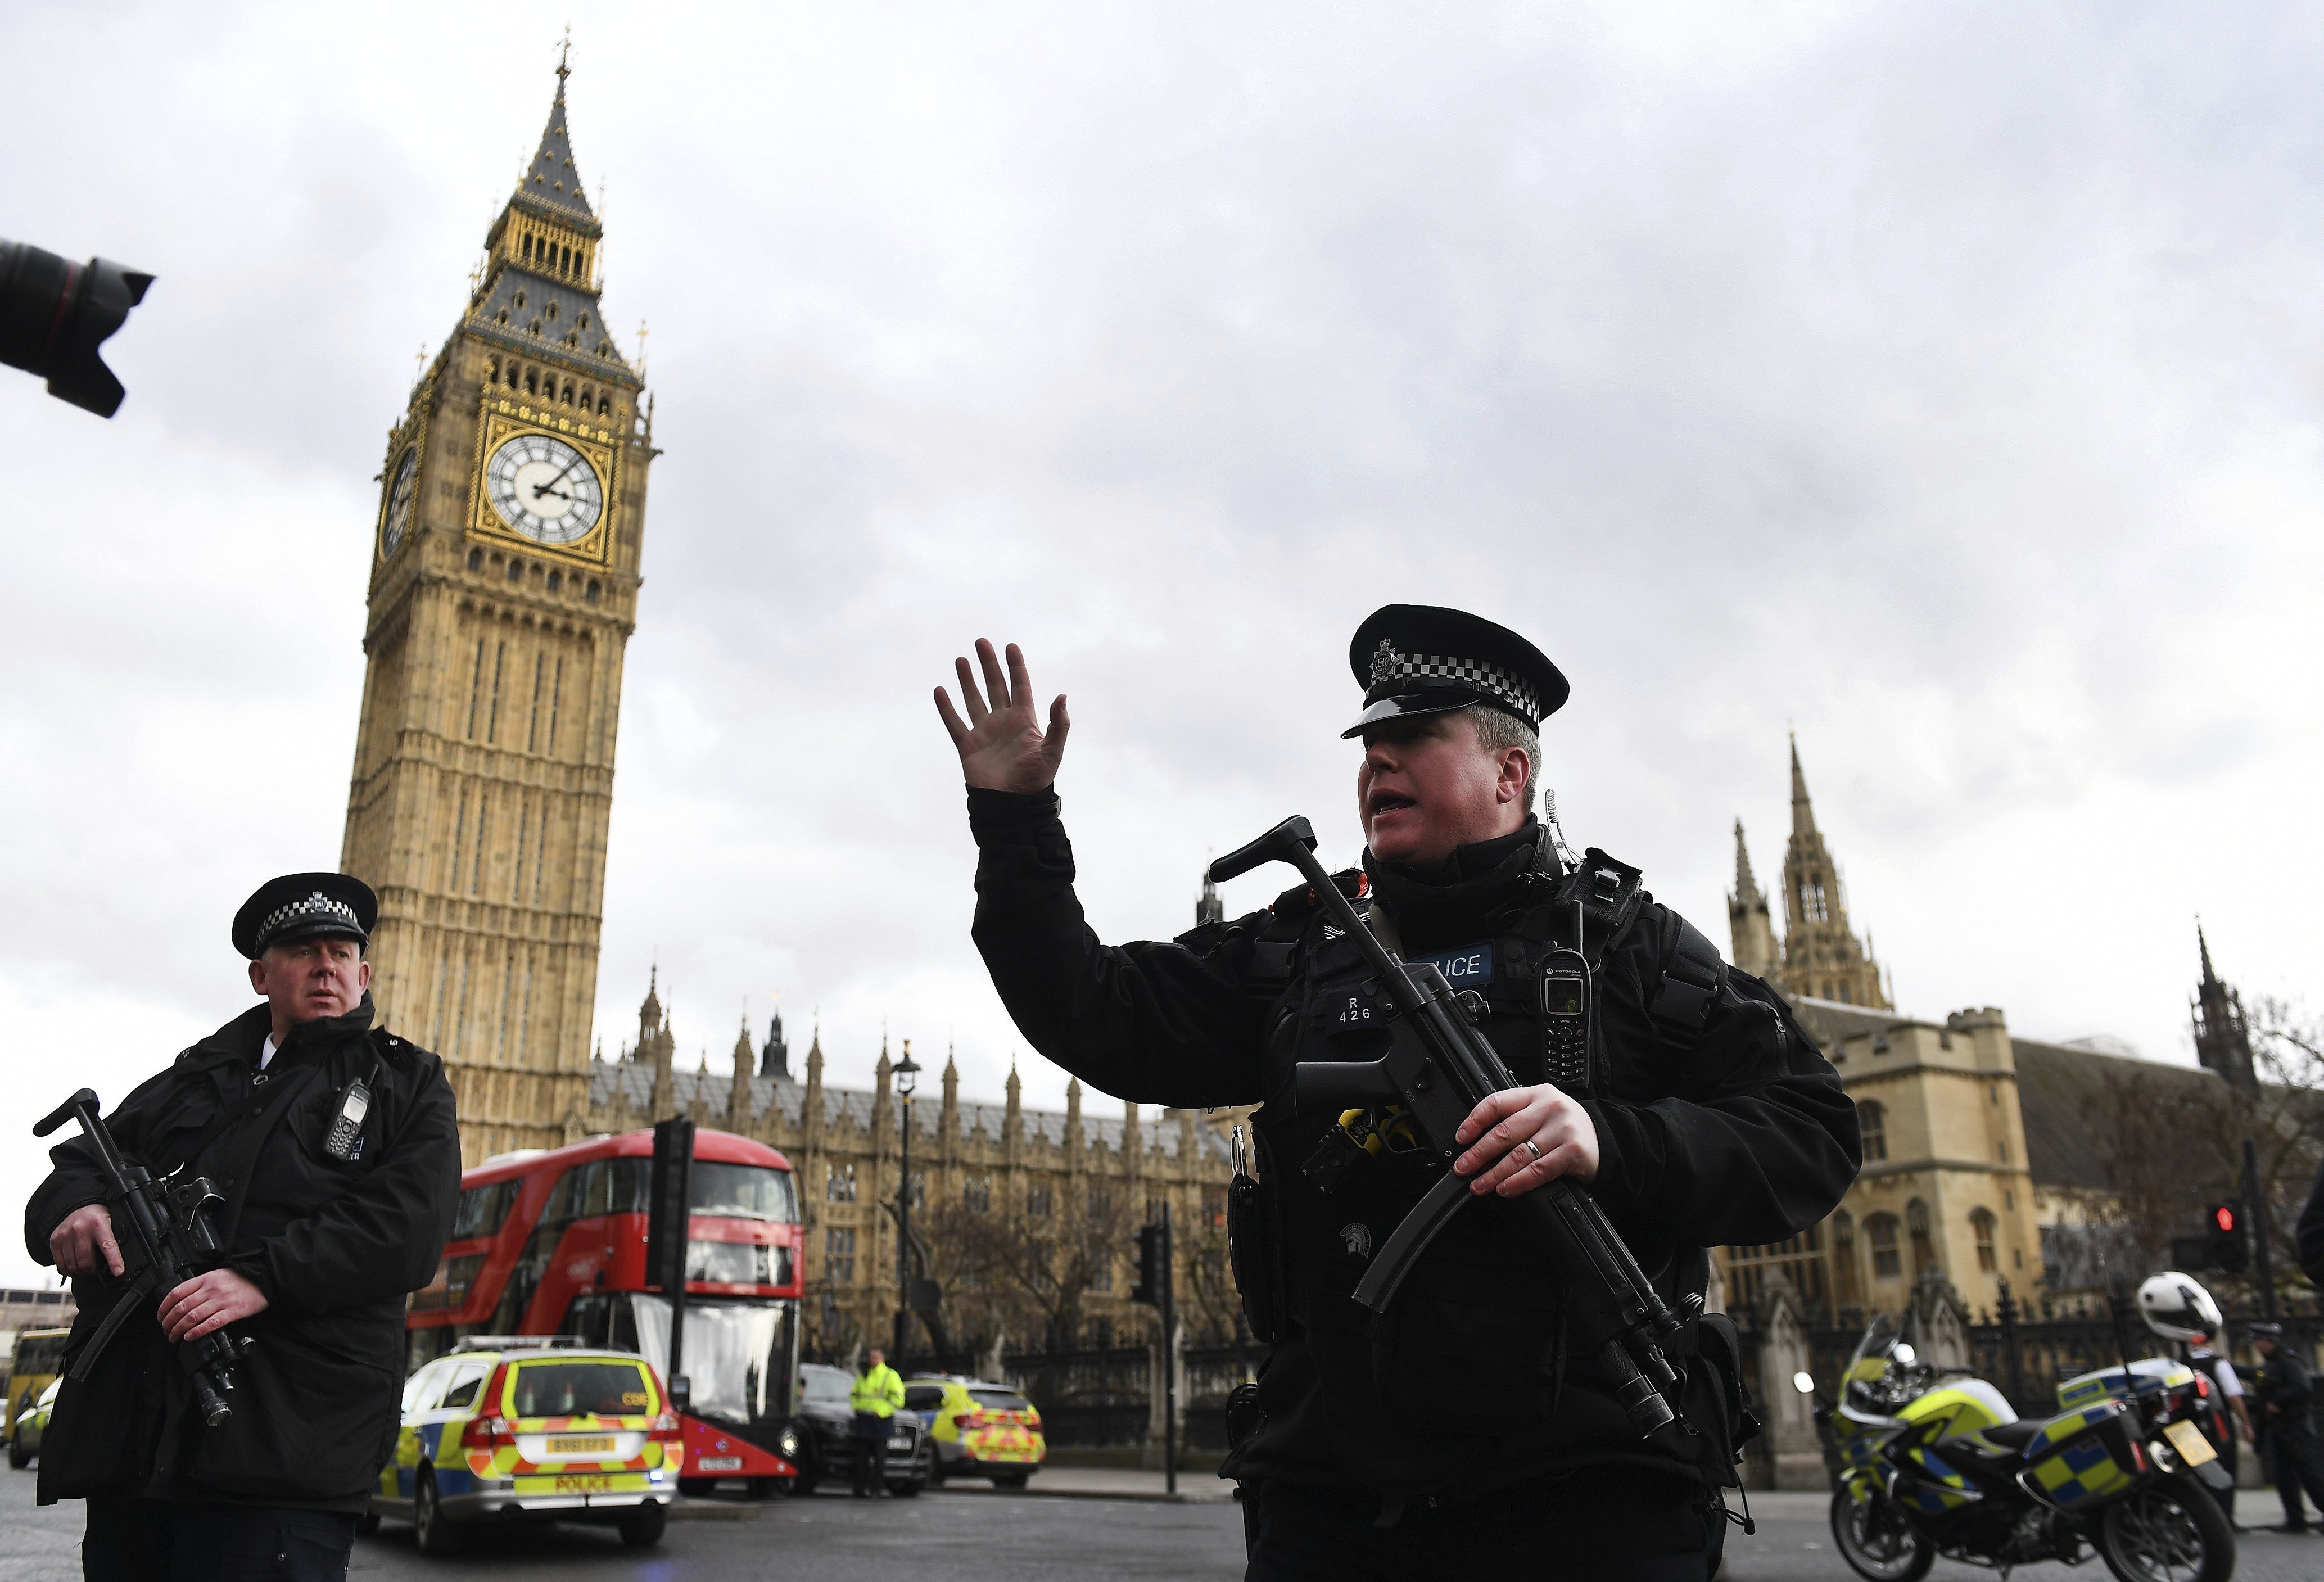  Ataque en el Parlamento causa conmoción en Gran Bretaña